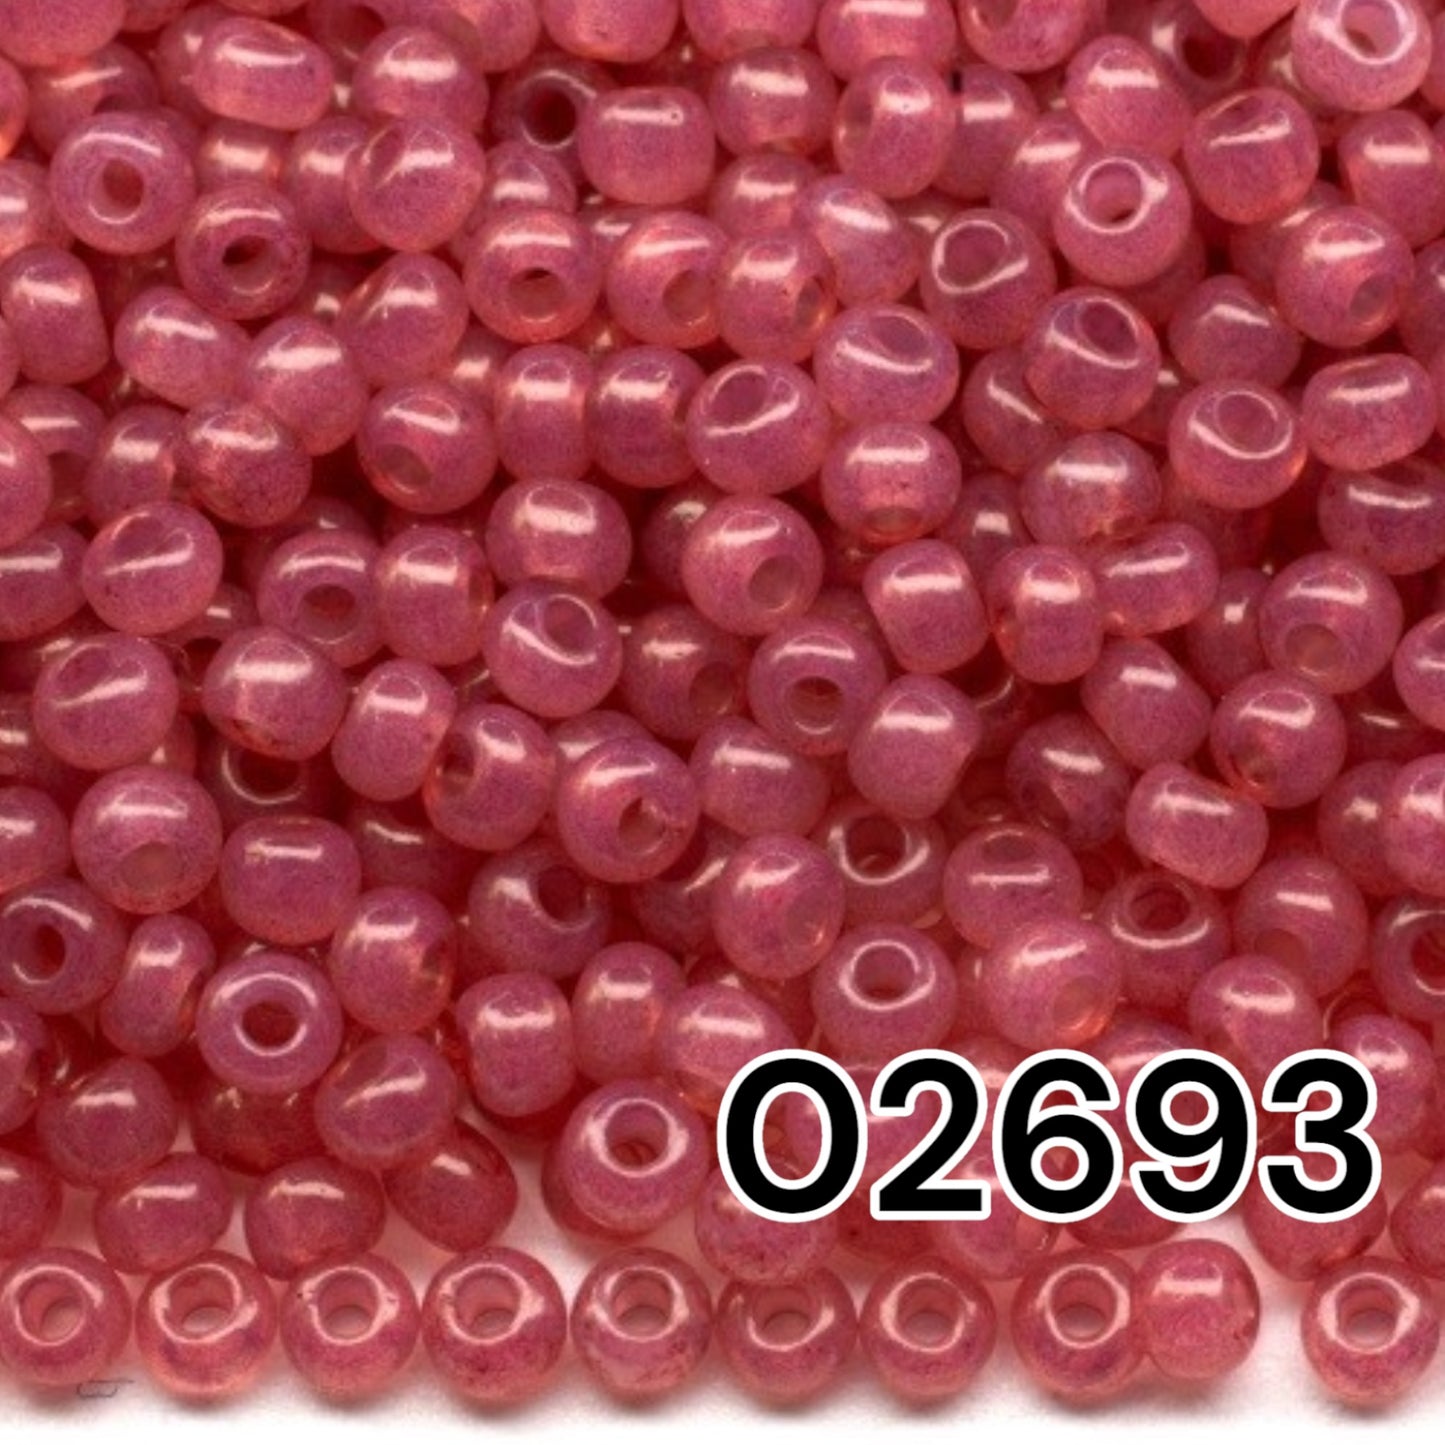 02693 Tschechische Rocailles PRECIOSA rund 10/0 lila rosa. Alabaster – Solgel-gefärbt.